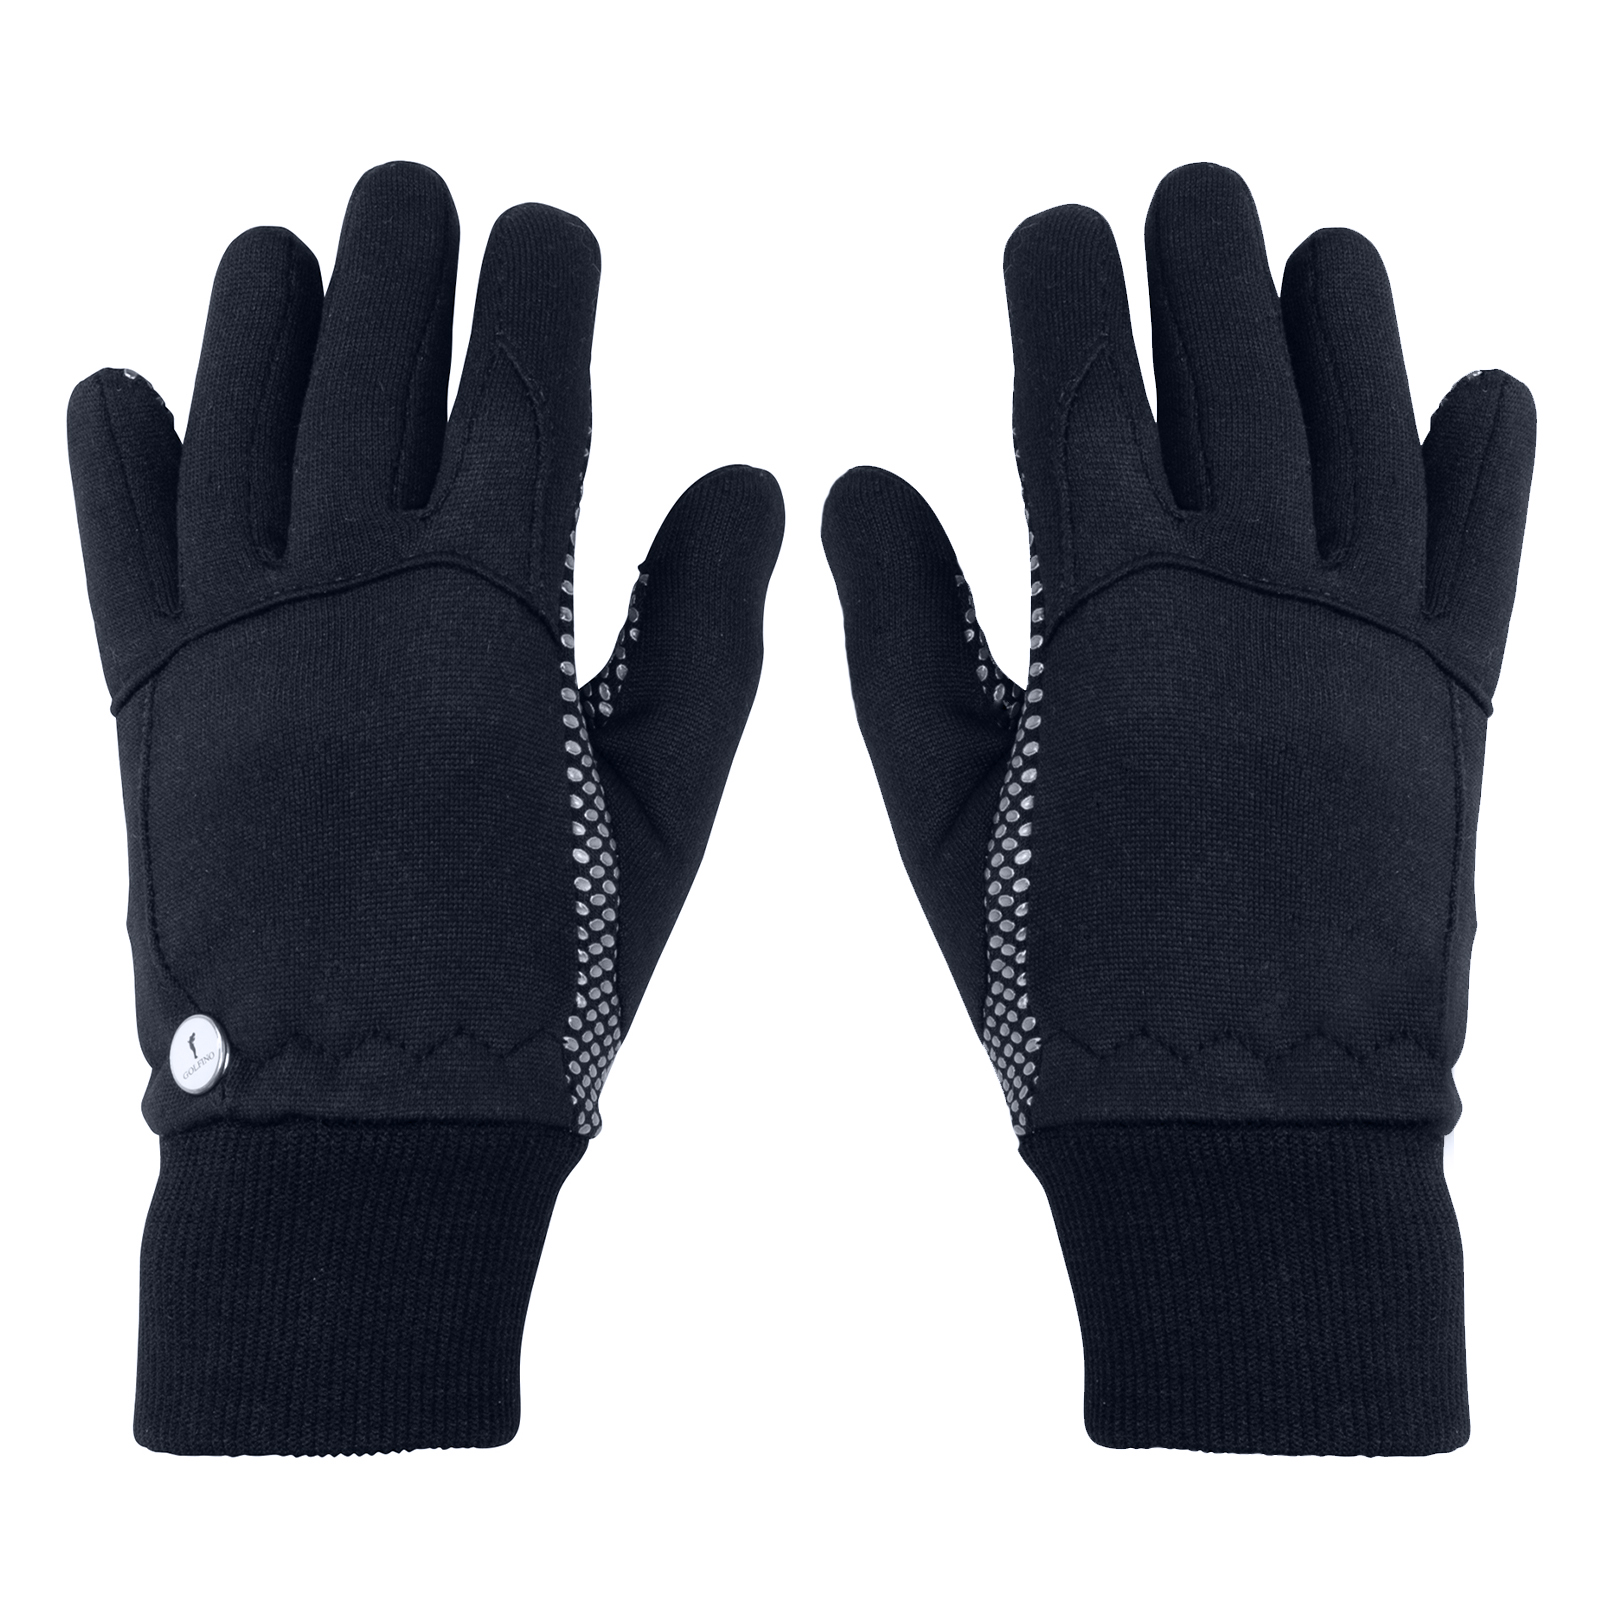 Warm ladies' gloves